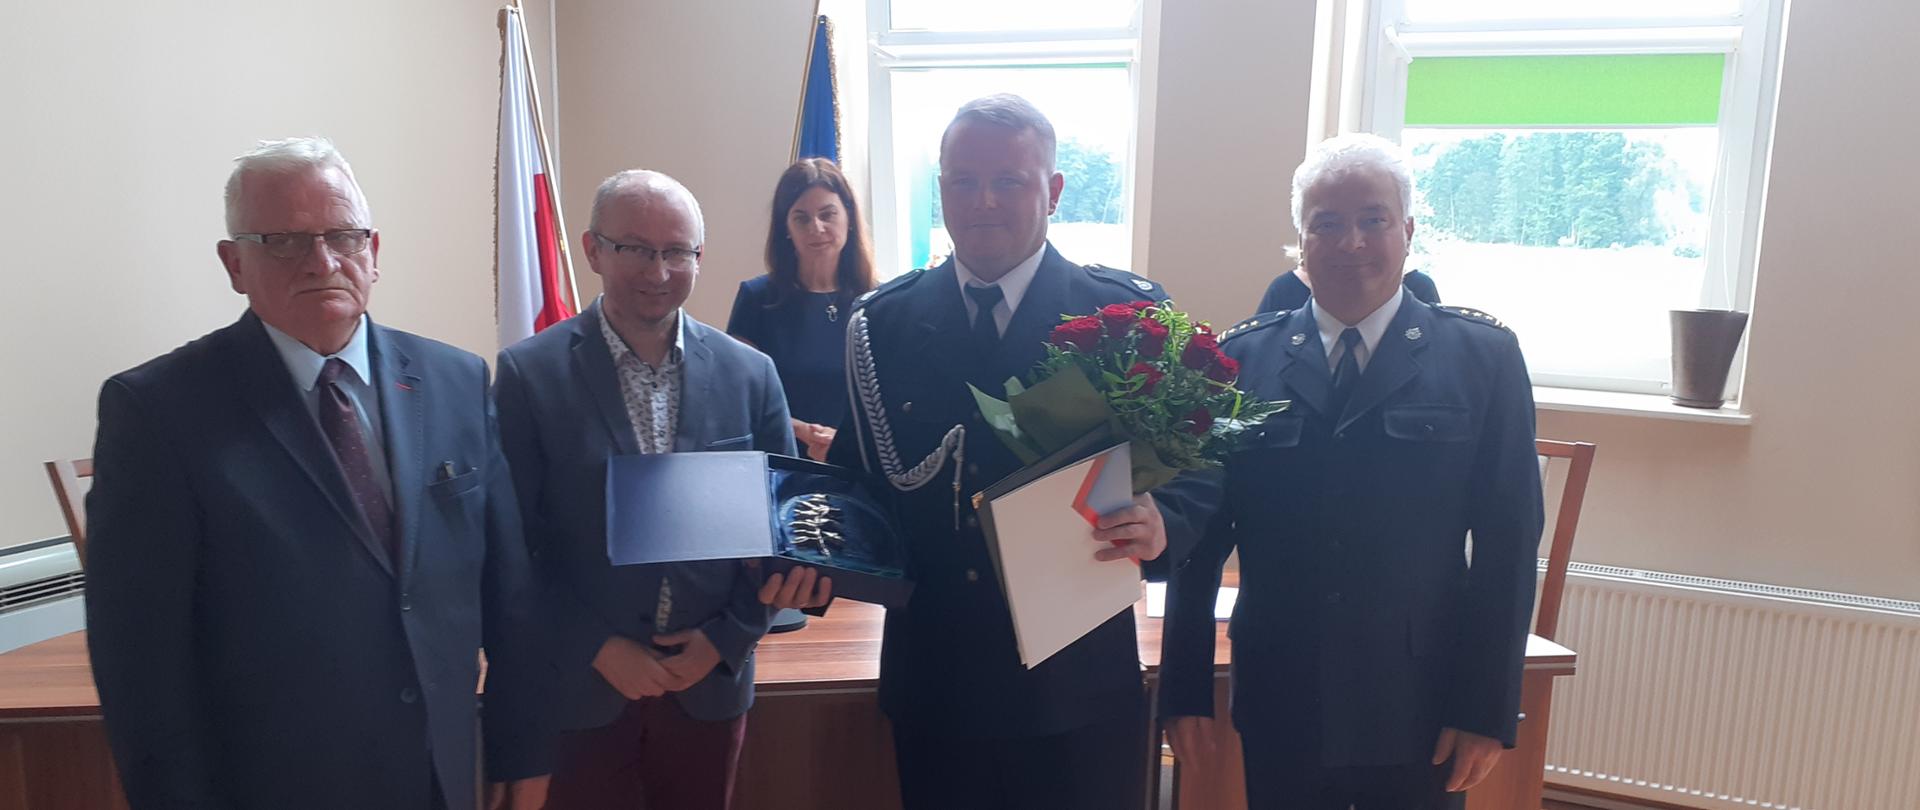 W urzędzie gminnym wręczeniem kwiatów i listu gratulacyjnego dla druha OSP. Obecny Komendant Powiatowy PSP, wójt oraz inni urzędnicy.